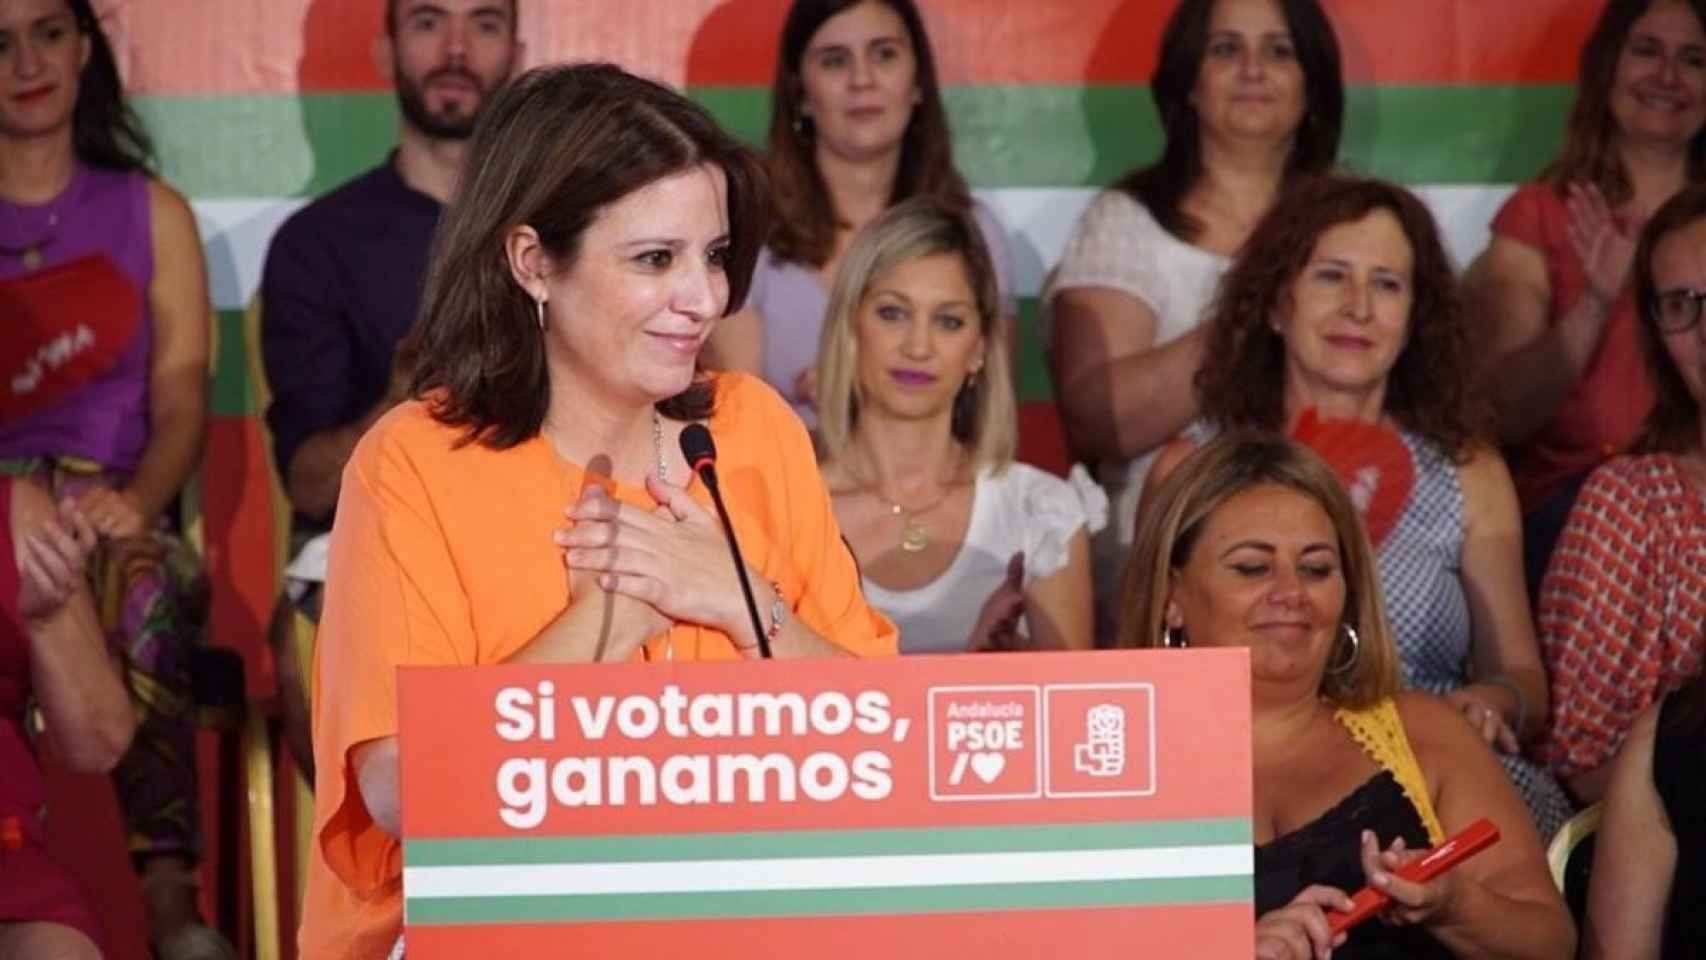 Adriana Lastra pide ir a votar el domingo en Andalucía para no tener que salir el lunes como hace cuatro años. Foto: EuropaPress